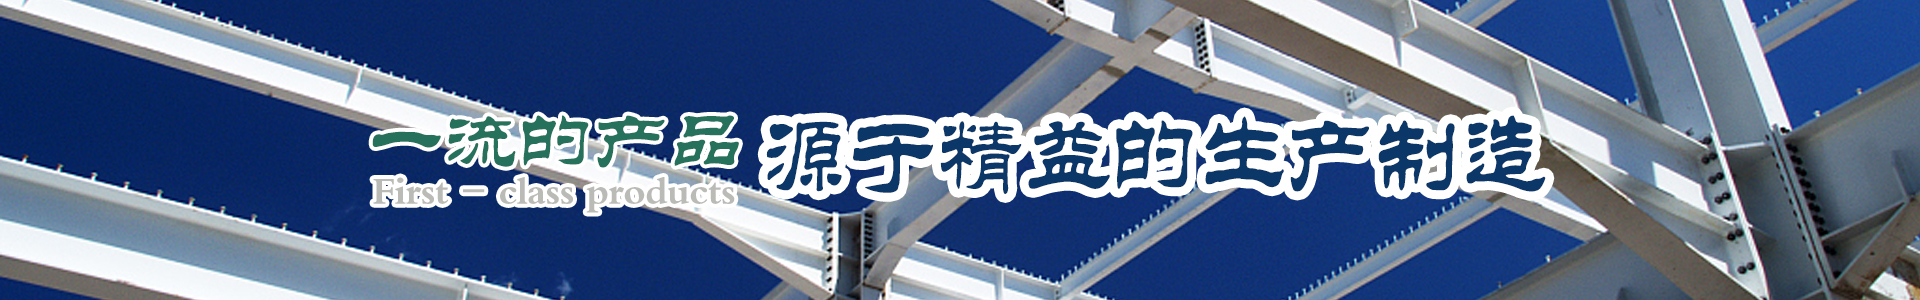 柳州雙華鋼模板_雙華圓柱鋼模板_雙華鋼模板廠家-六順金屬材料有限公司